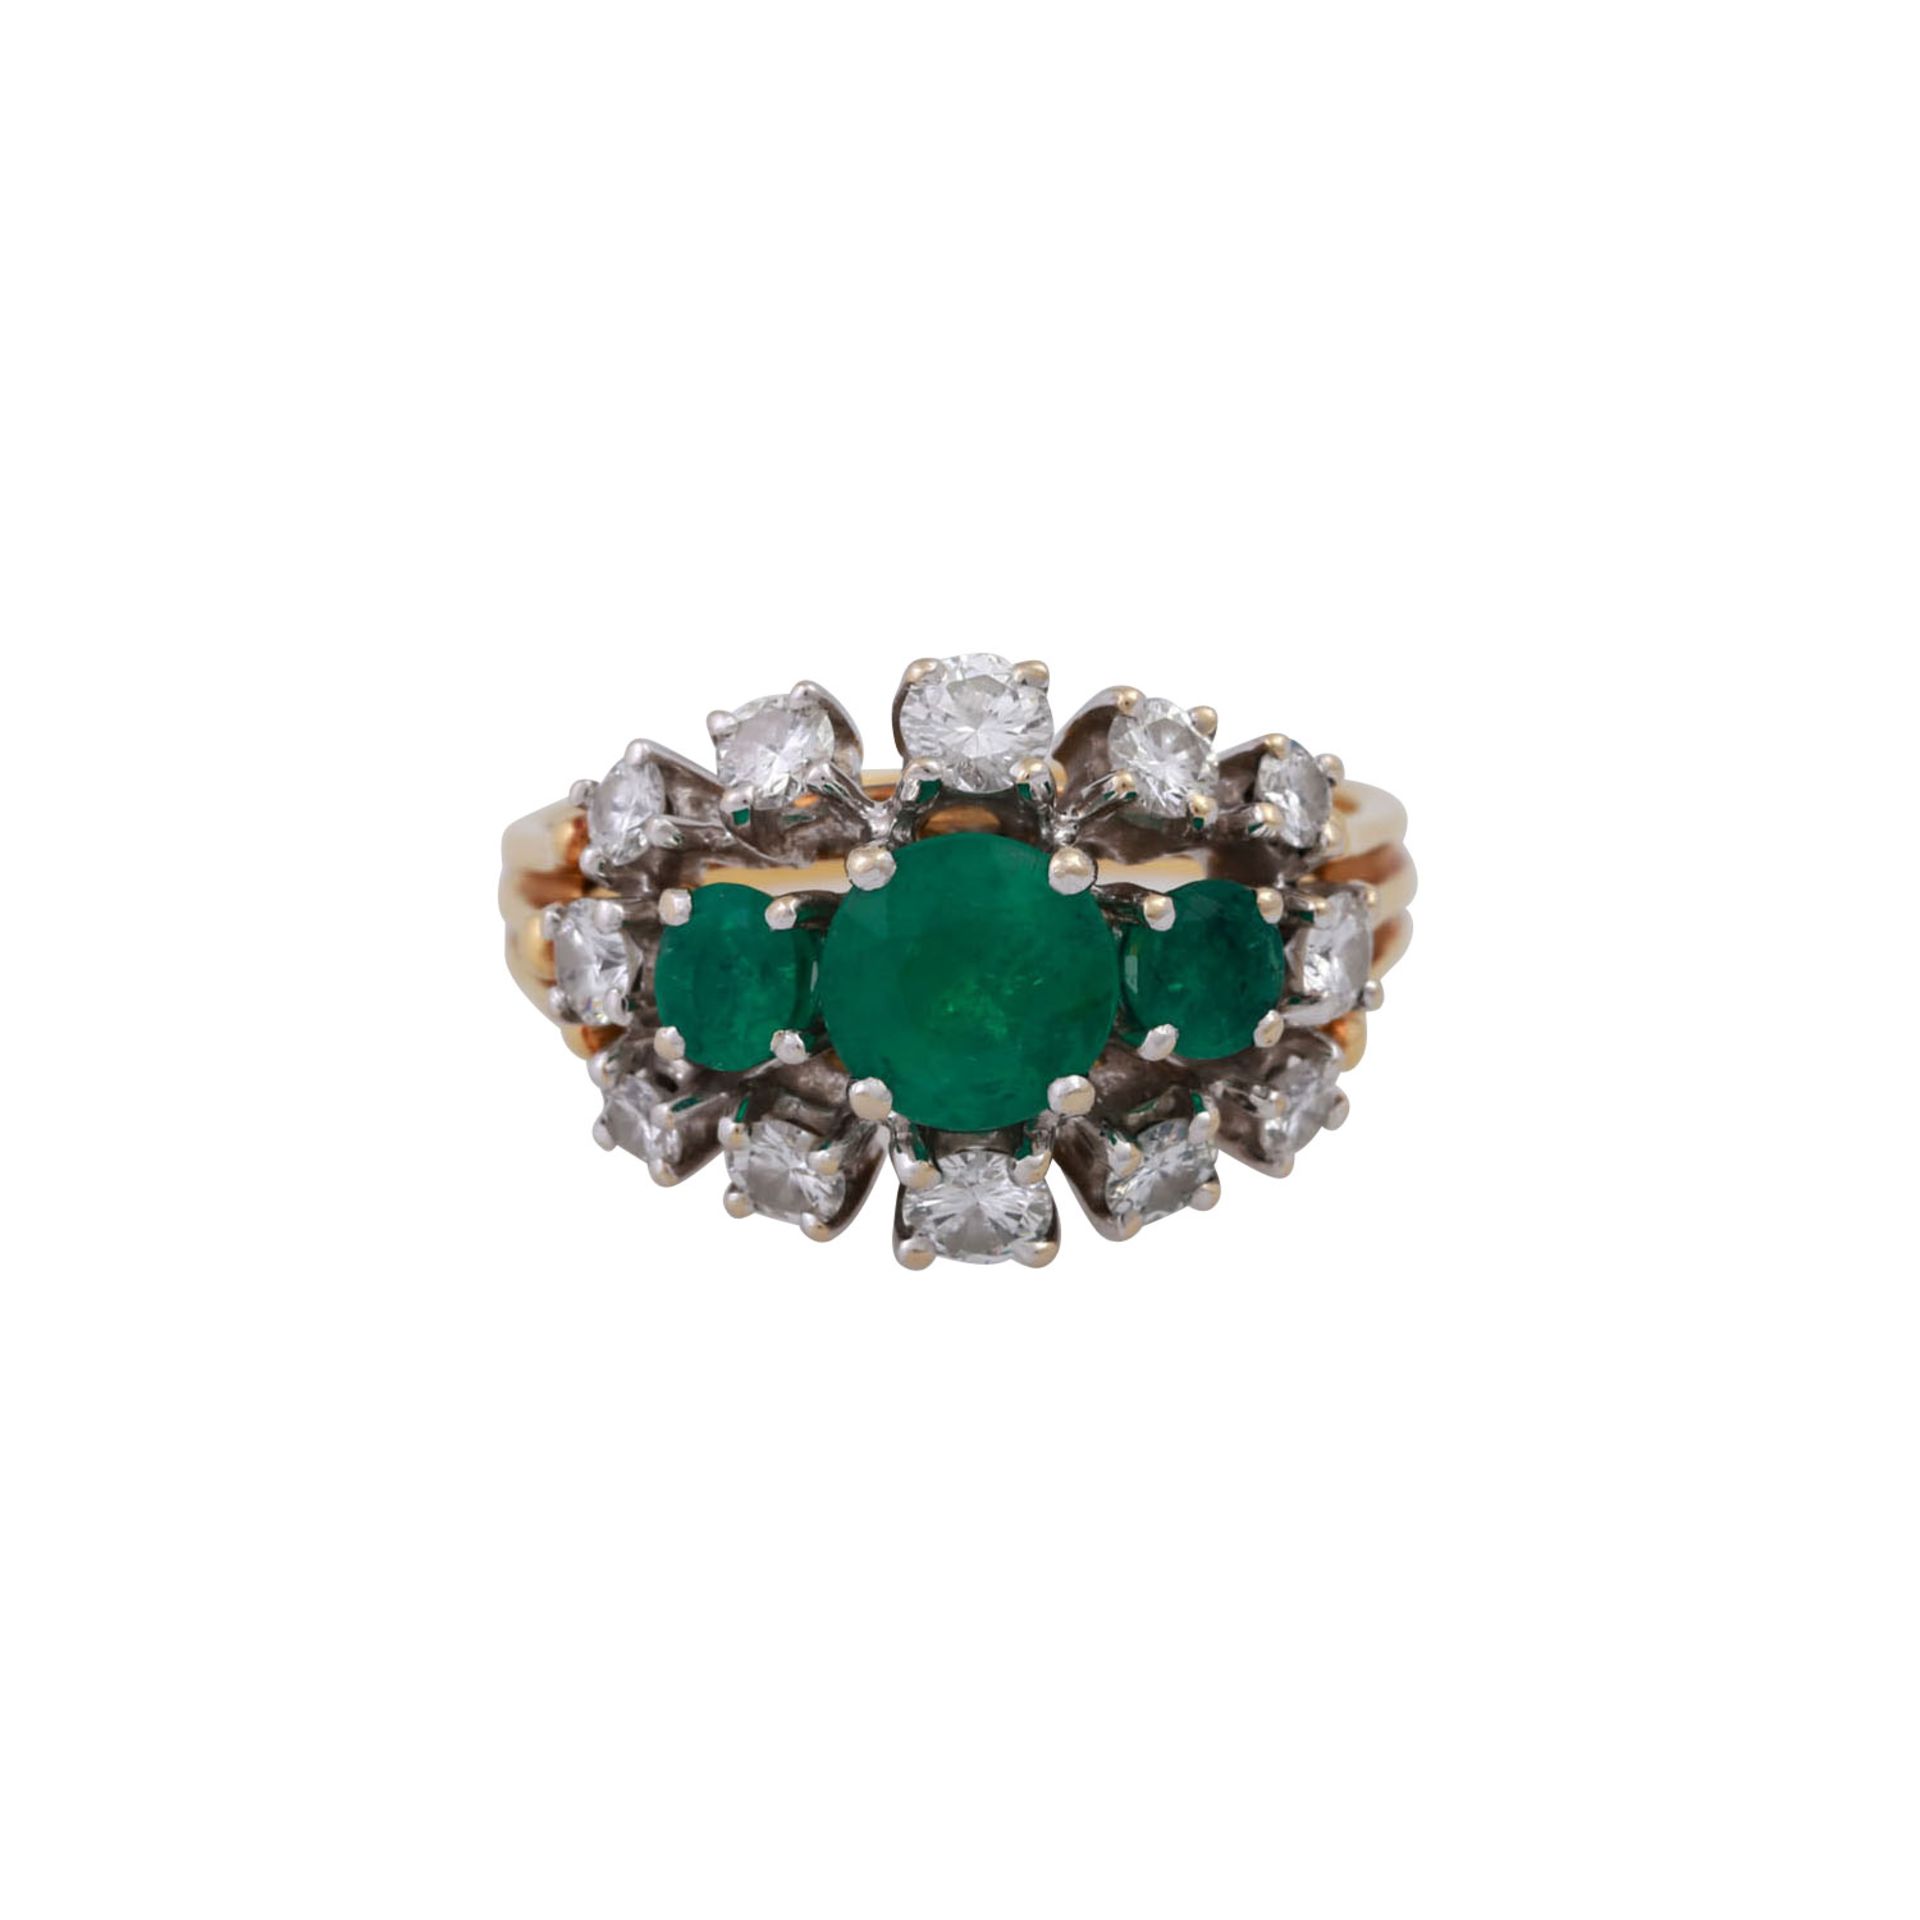 Ring mit 3 Smaragden und 12 Brillanten, zus. ca. 1 ct,guter Farb- und Reinheitsgrad, Anordnung im